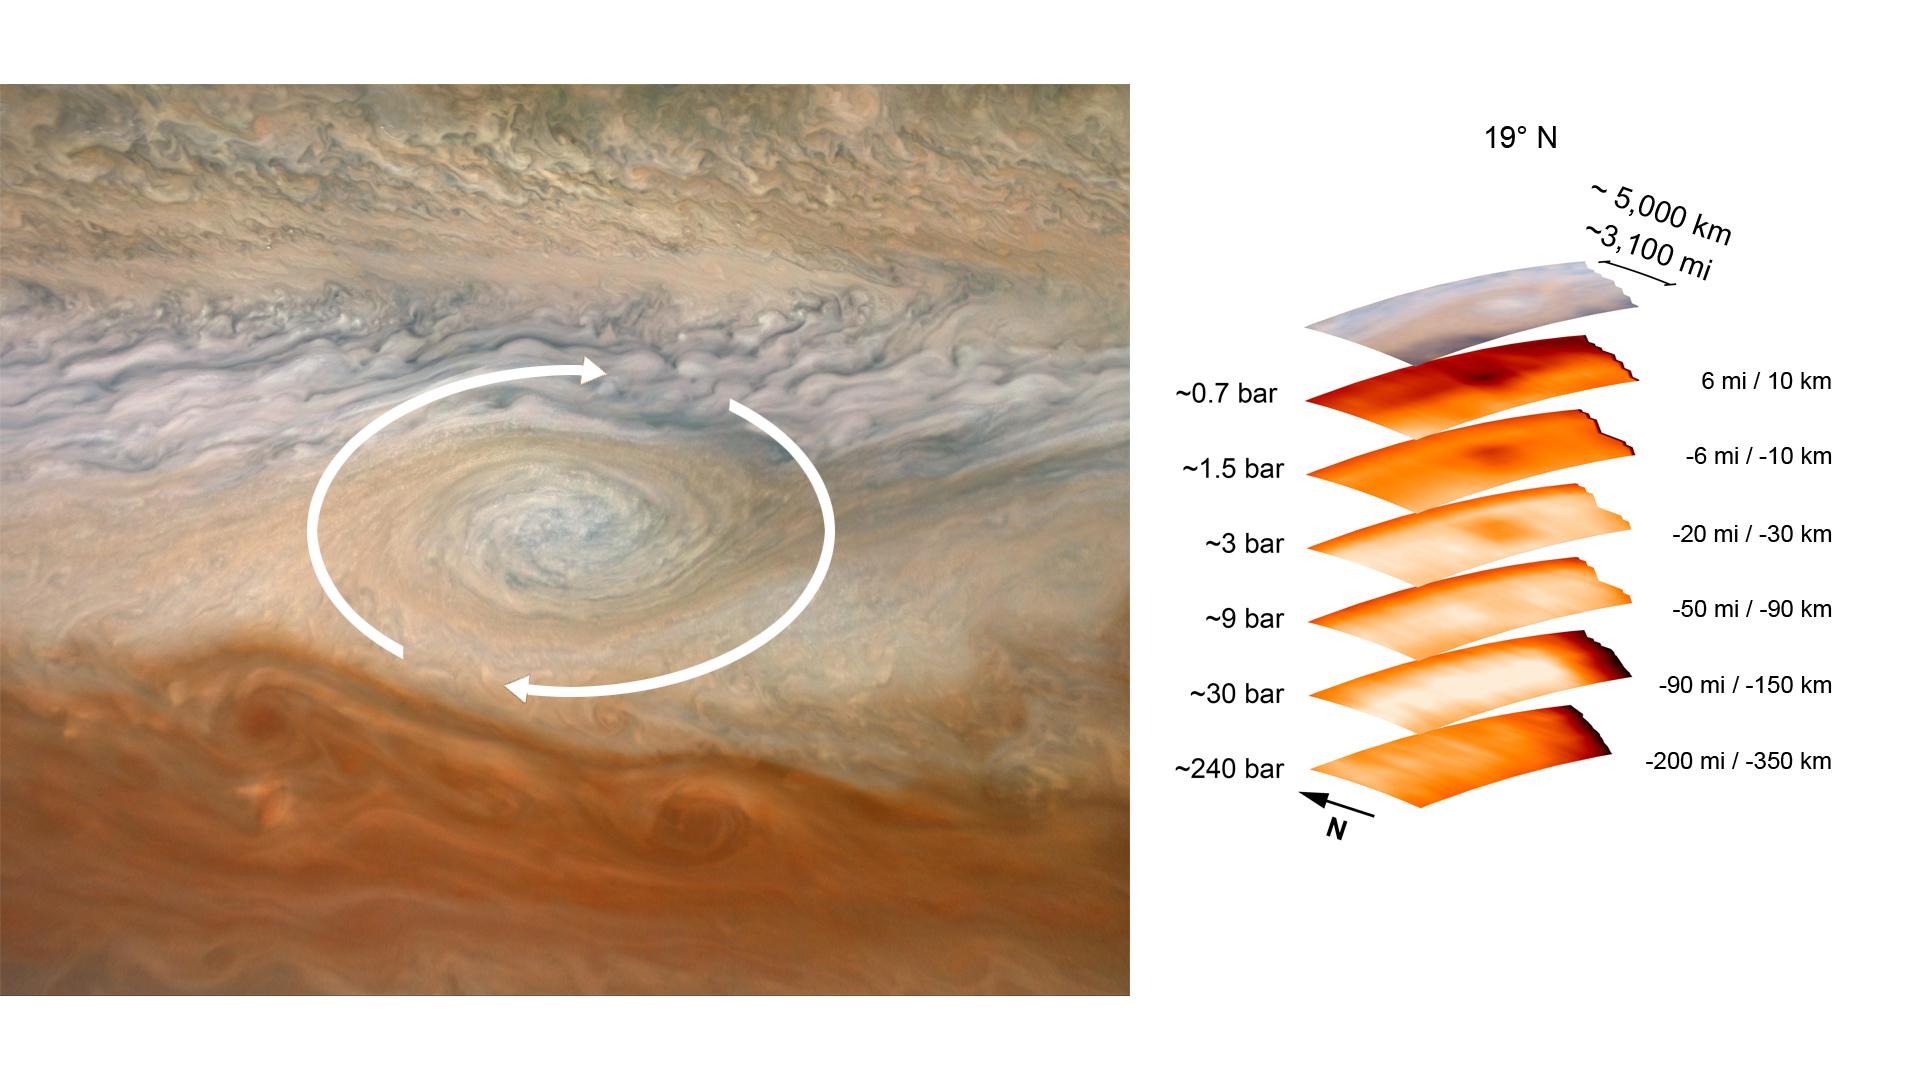 PIA24975: A Deep Dive Into a Jupiter Vortex